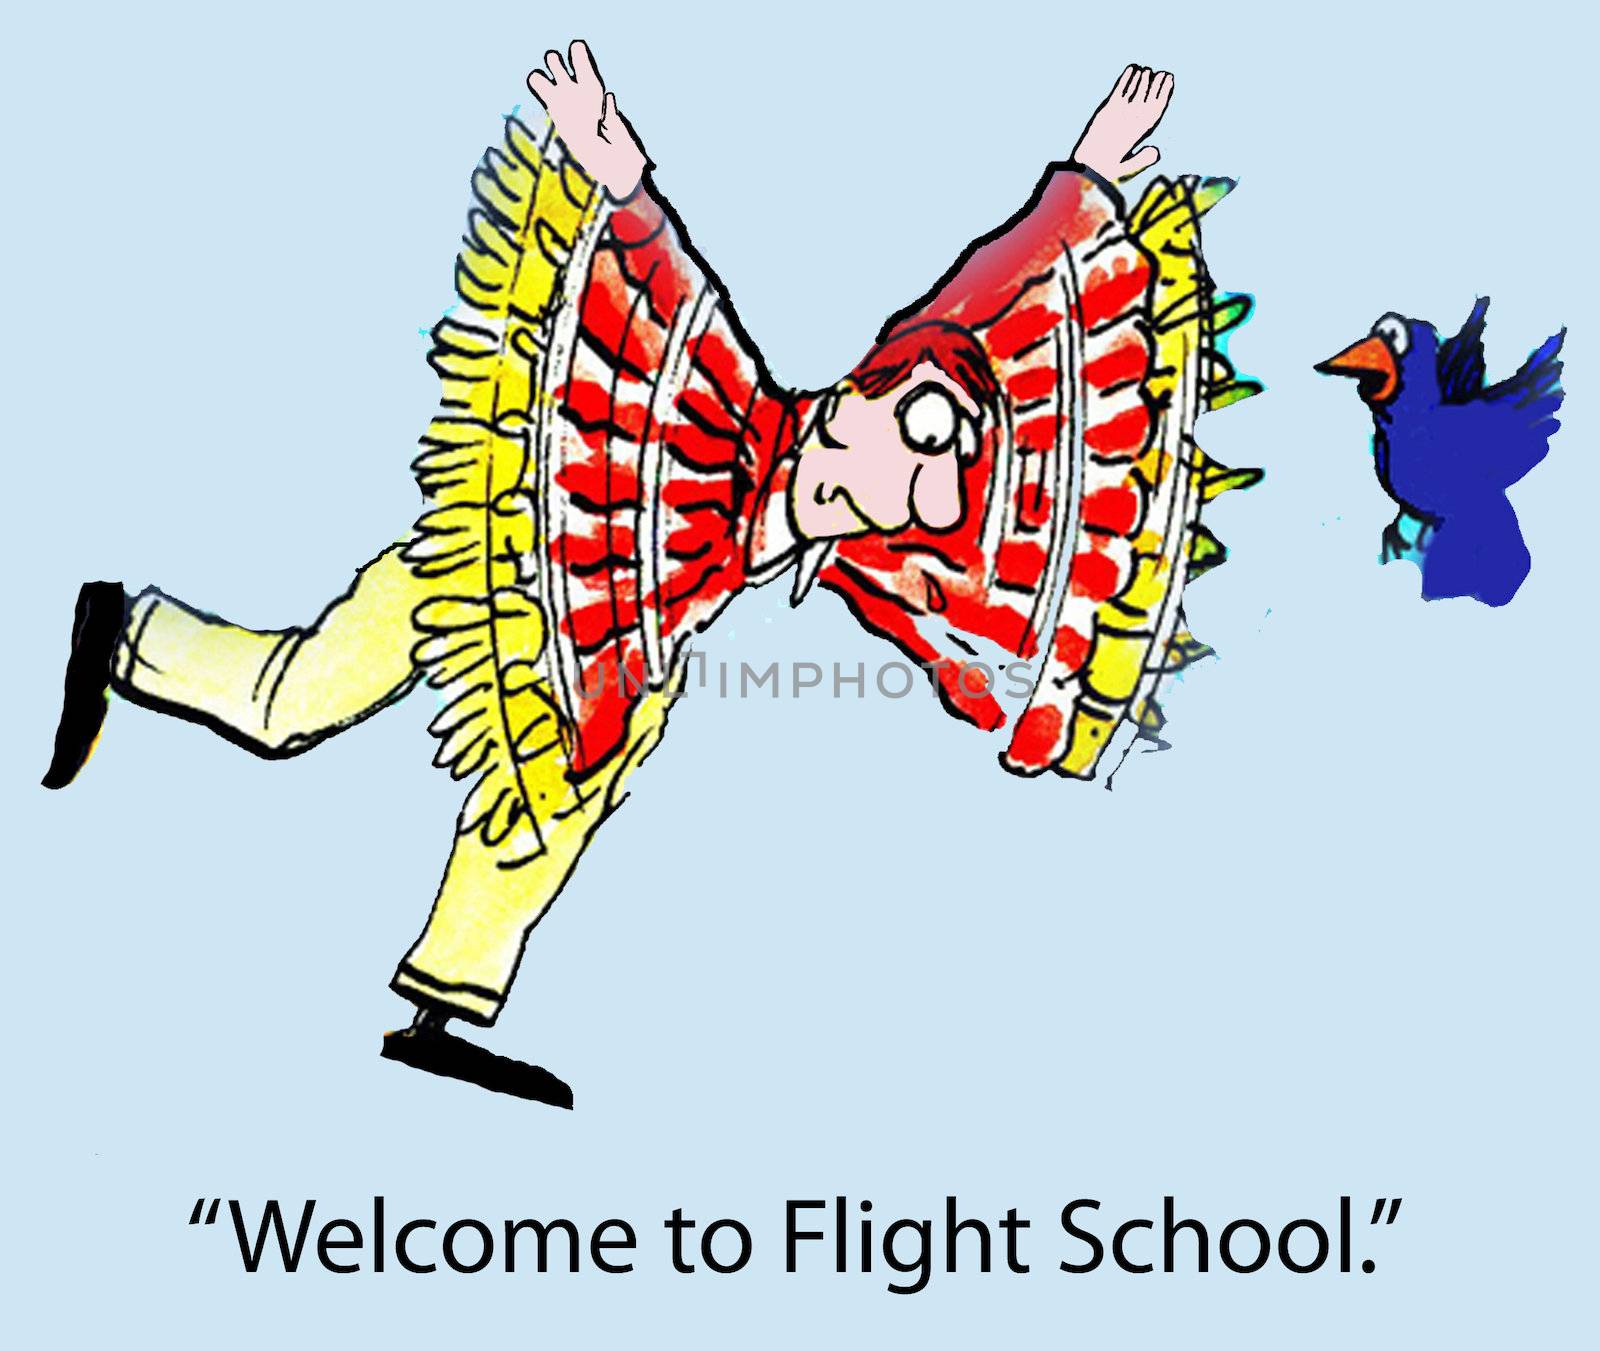 "Welcome to Flight School."